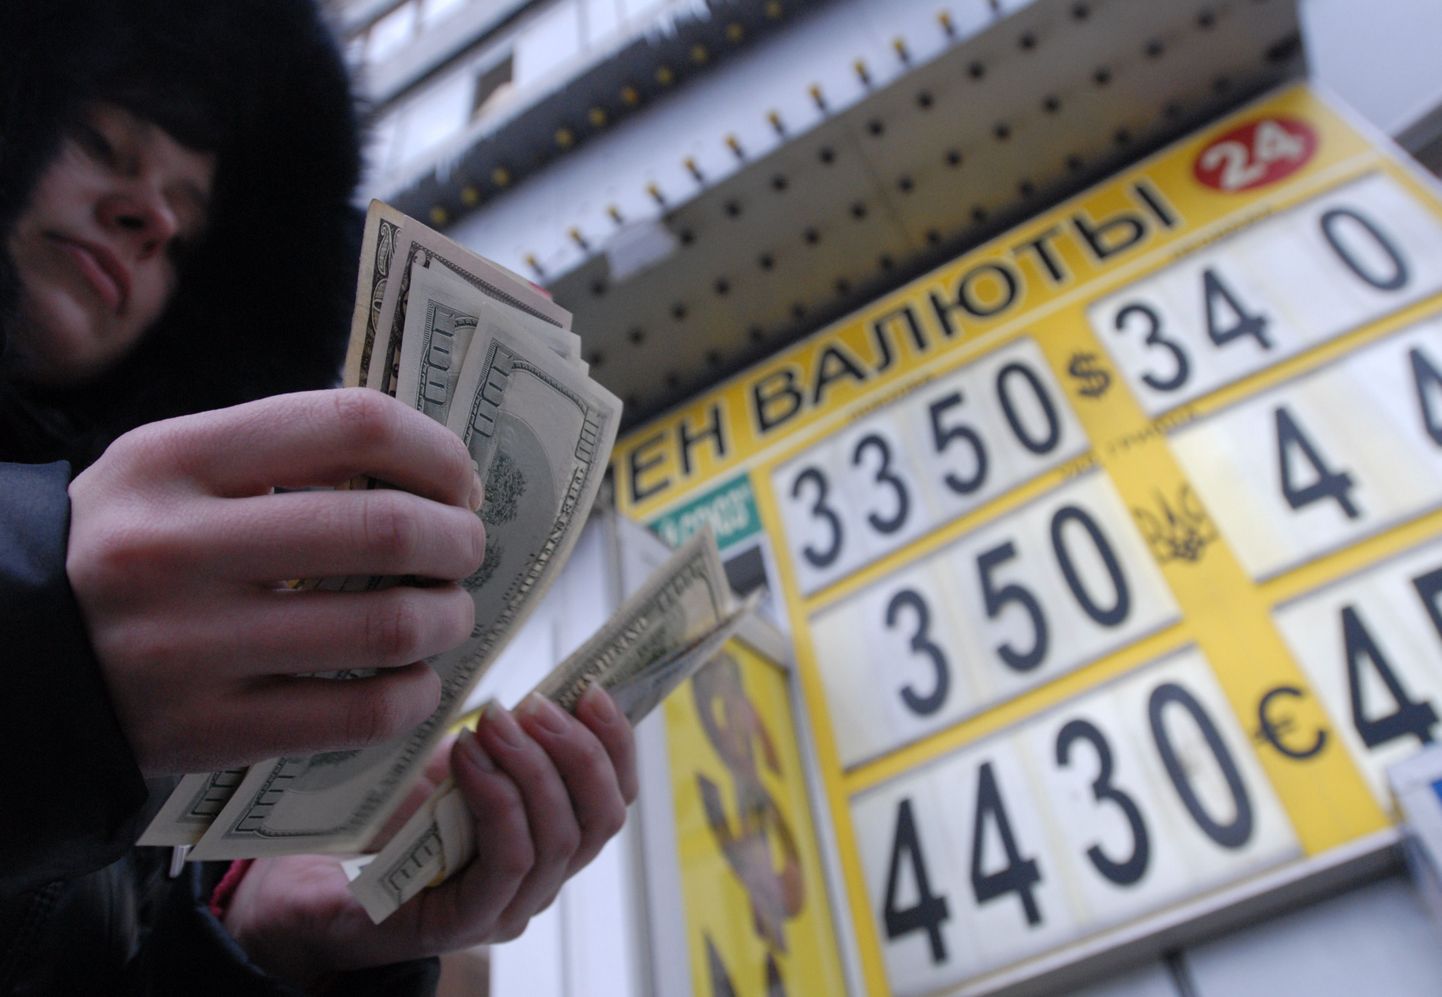 Moskvalane valuutavahetuspunkti juures dollareid üle lugemas.